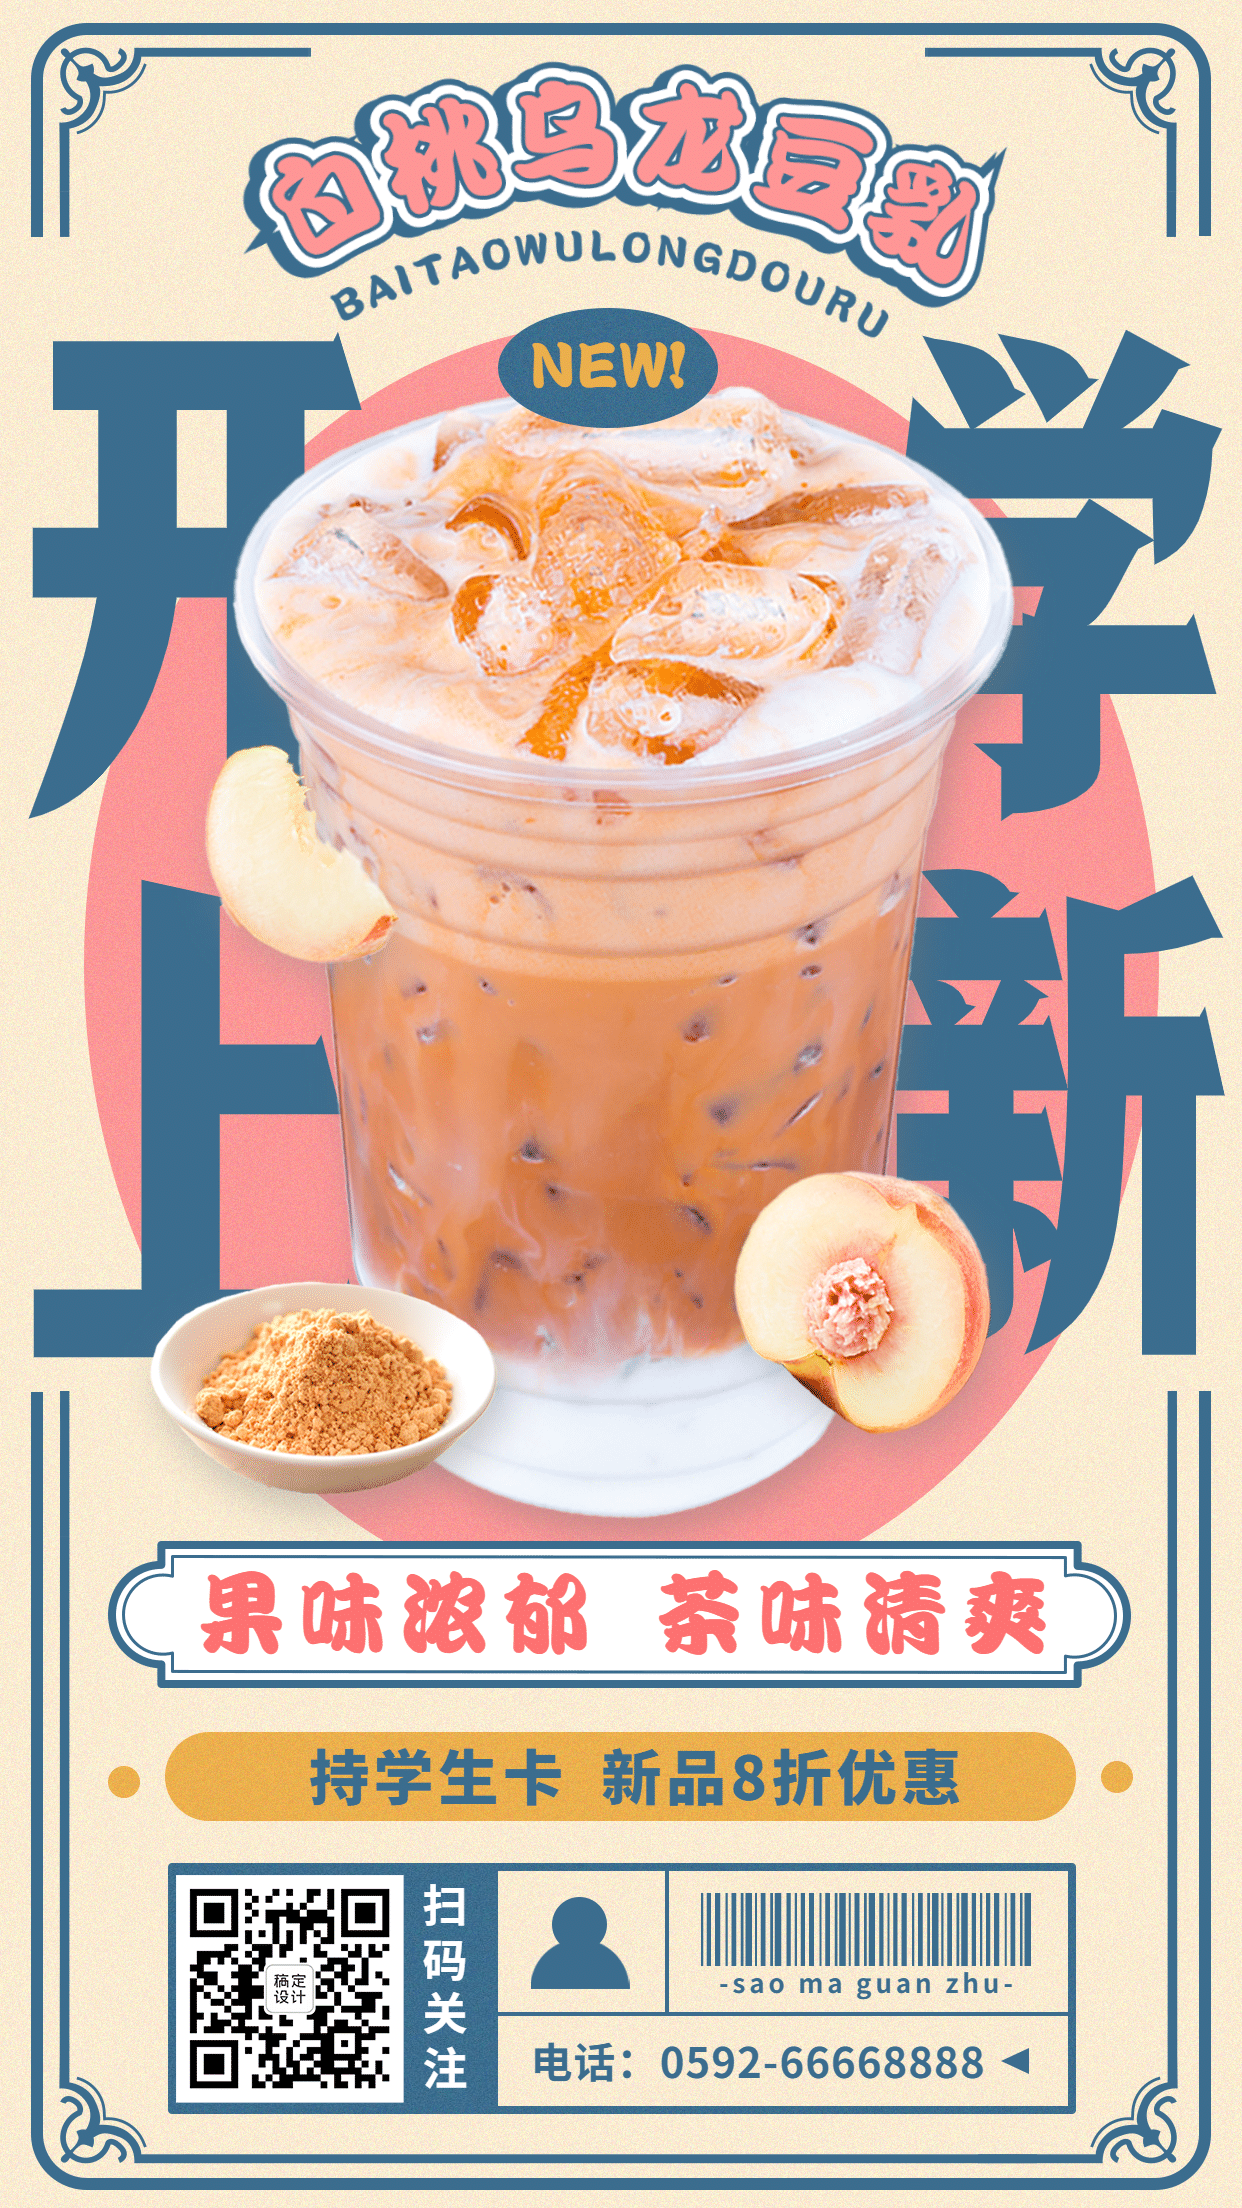 奶茶饮品新品促销实景竖版海报